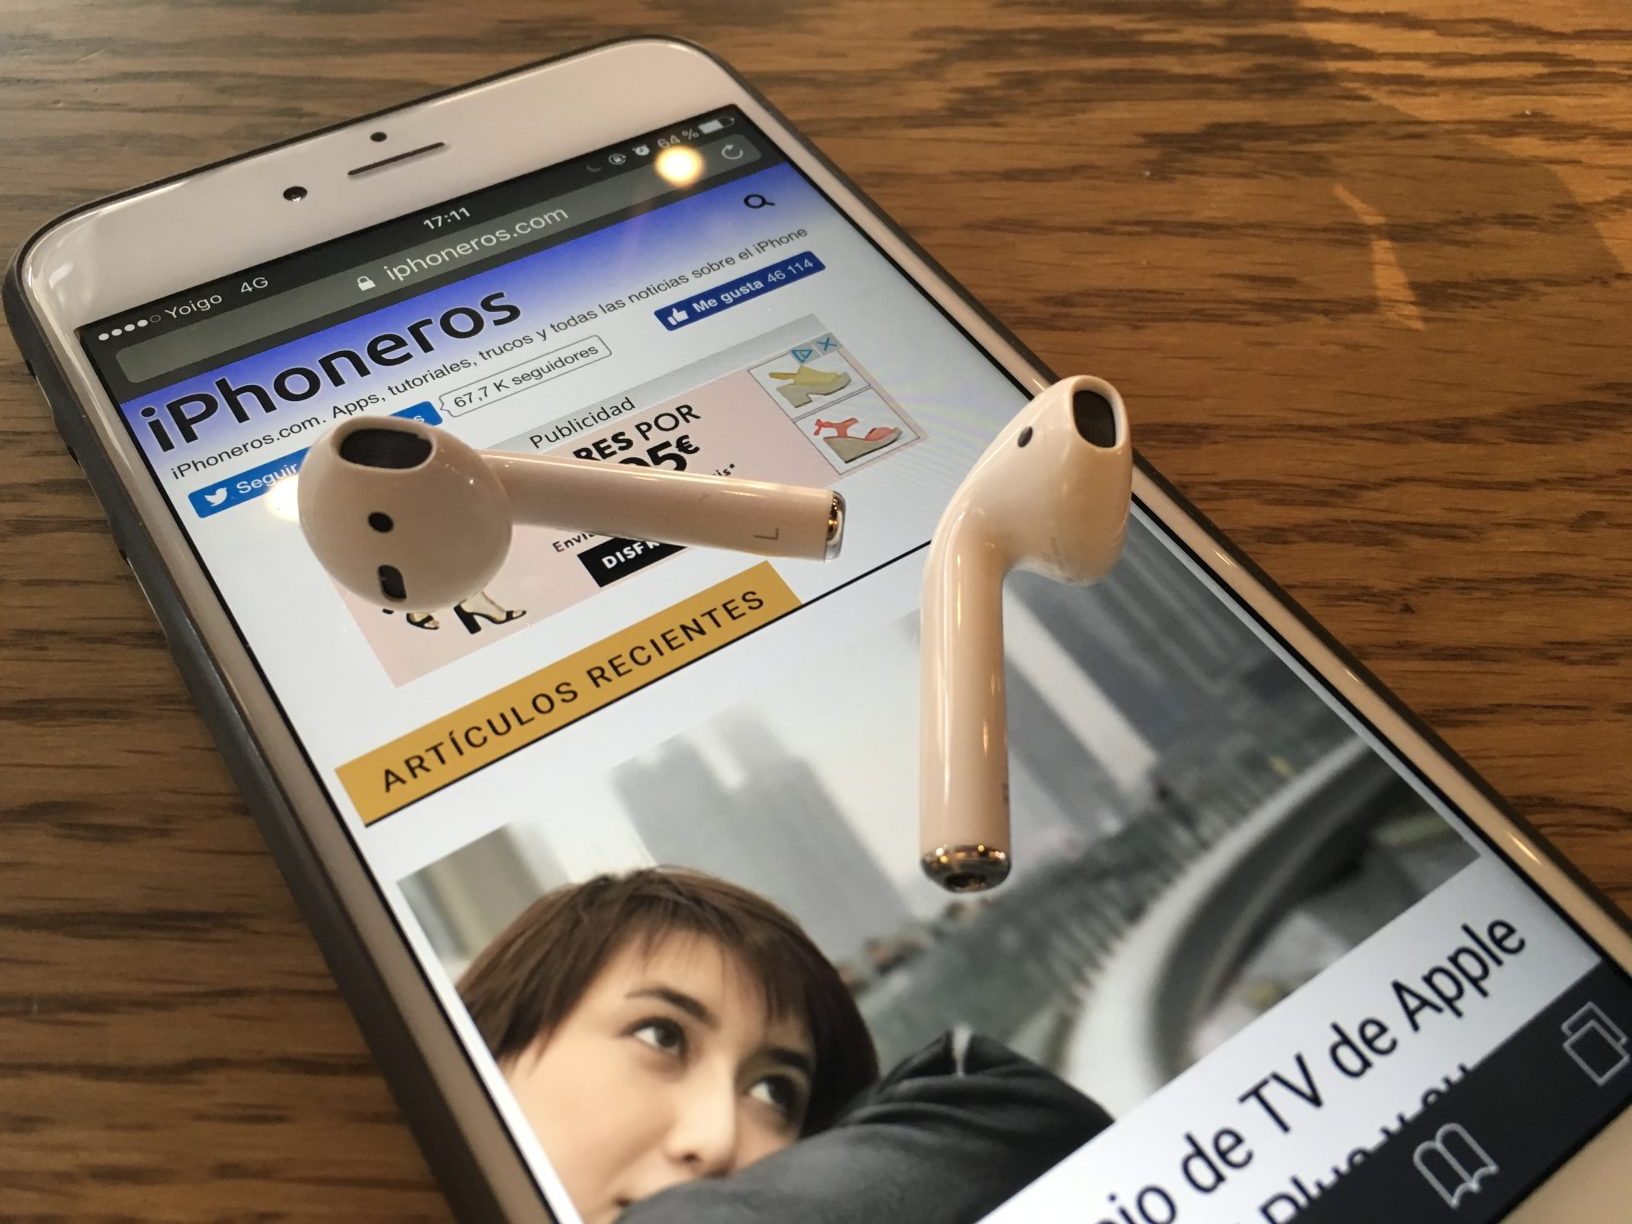 FiLMiC Pro se actualiza, ahora puede utilizar los AirPods como micrófono,  tiene mejoras para el iPhone X | iPhoneros